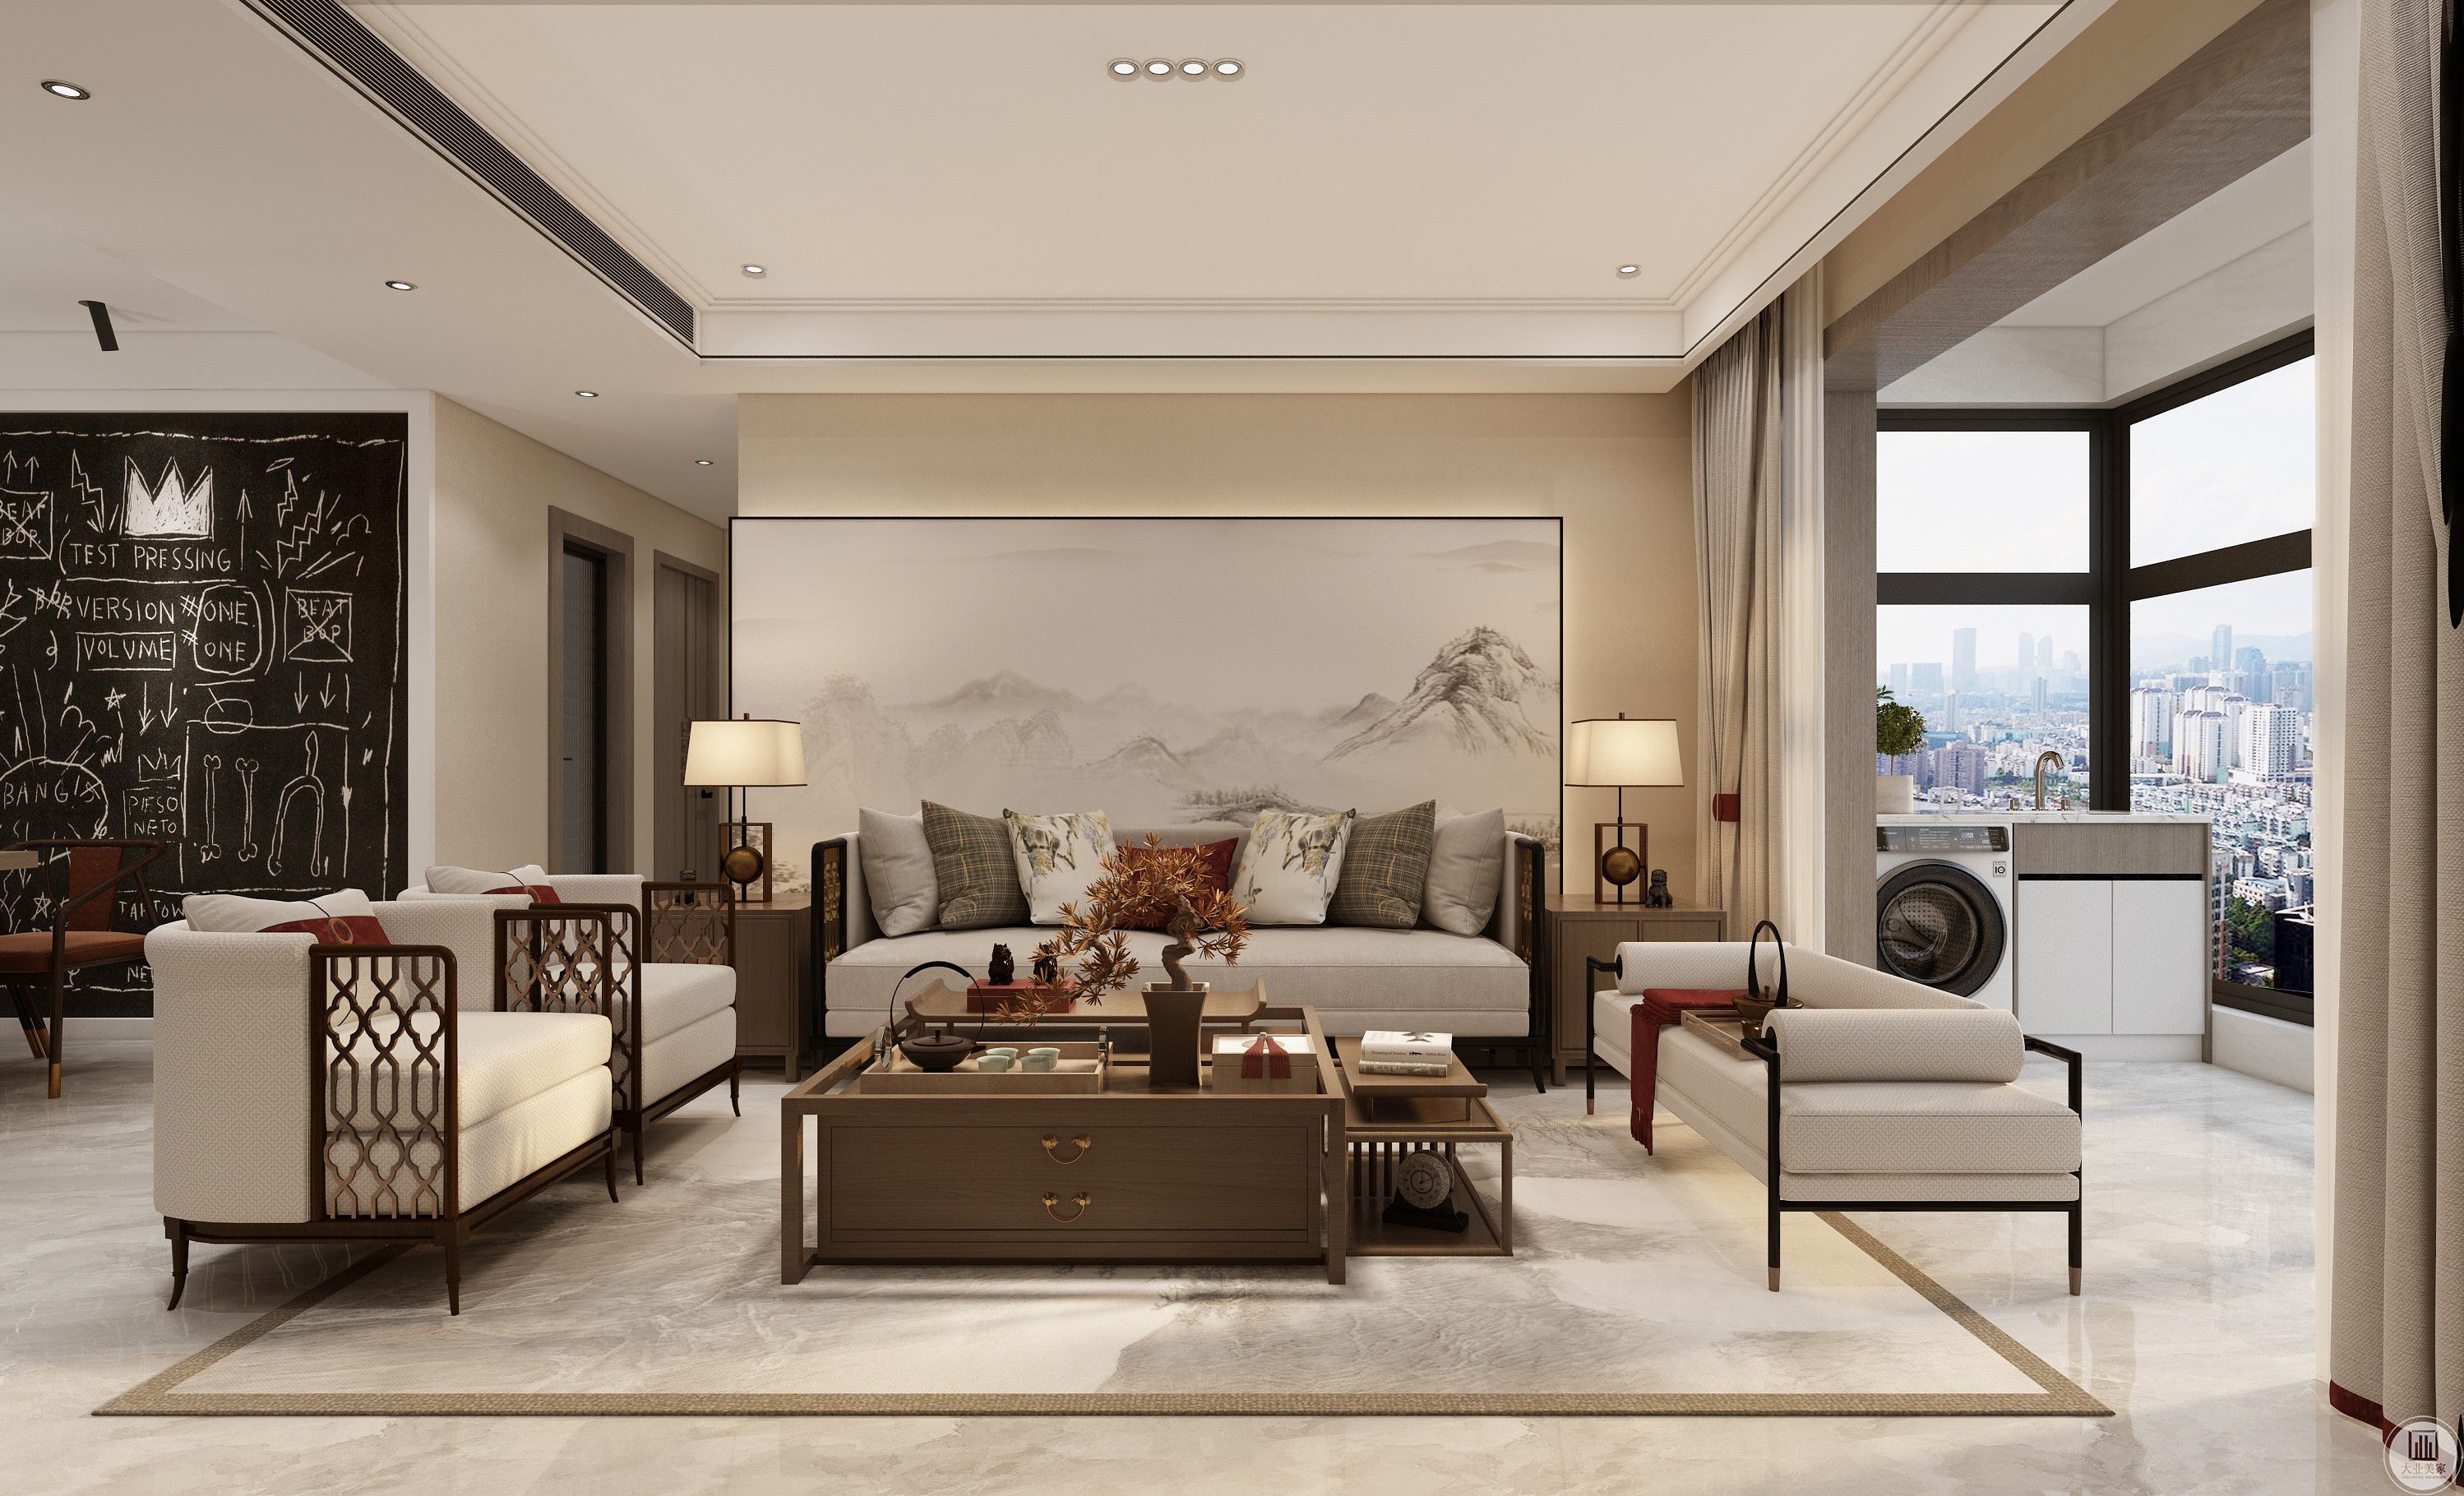 客廳是傳統與現代居室風格的碰撞，設計師以現代的裝飾手法和家具，結合古典中式的裝飾元素，來呈現亦古亦今的空間氛圍。